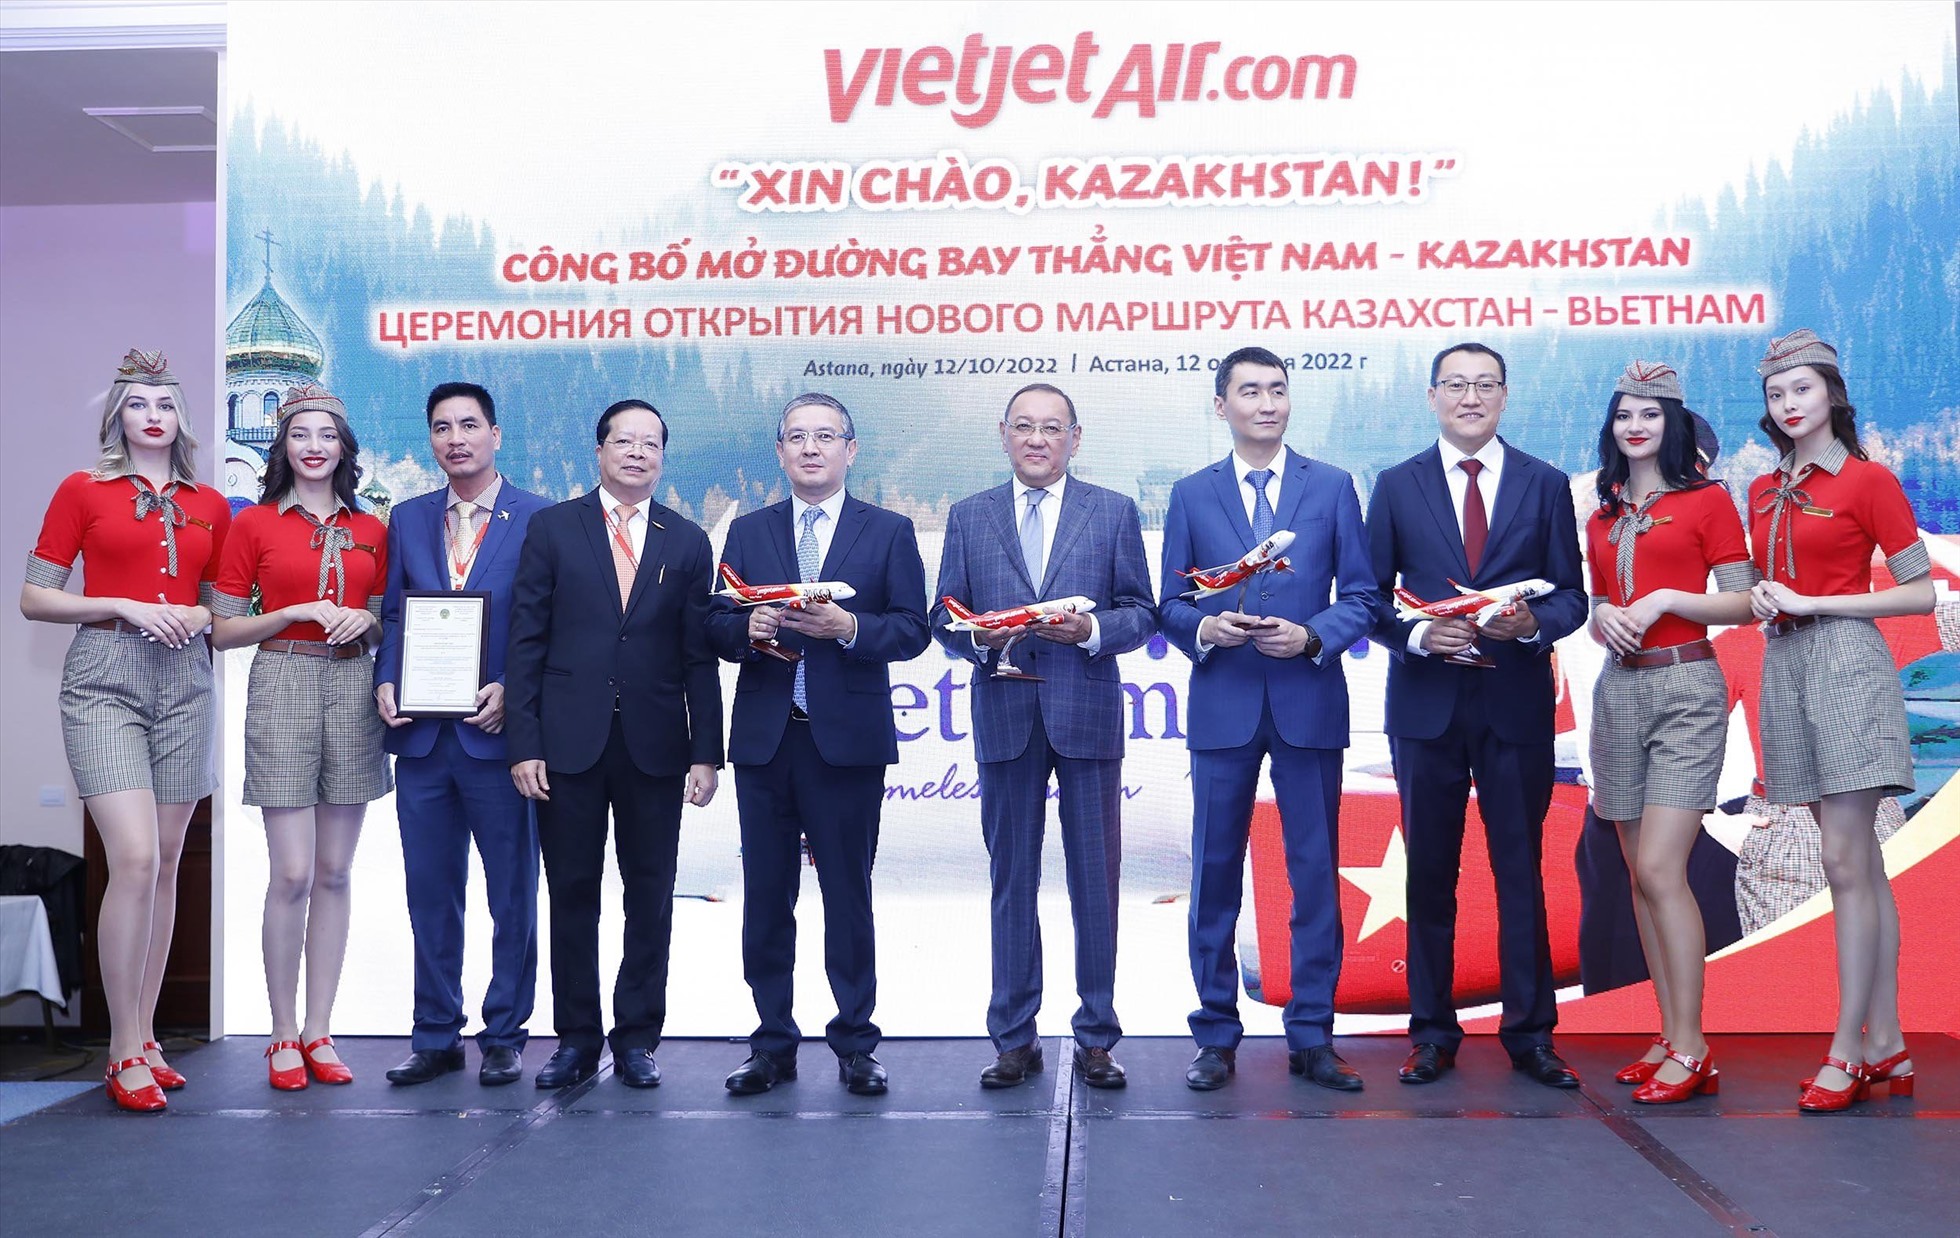 Lãnh đạo hai nước Việt Nam và Kazakhstan tham dự lễ công bố đường bay Almaty - Nha Trang và chào mừng Vietjet đến với Kazakhstan.